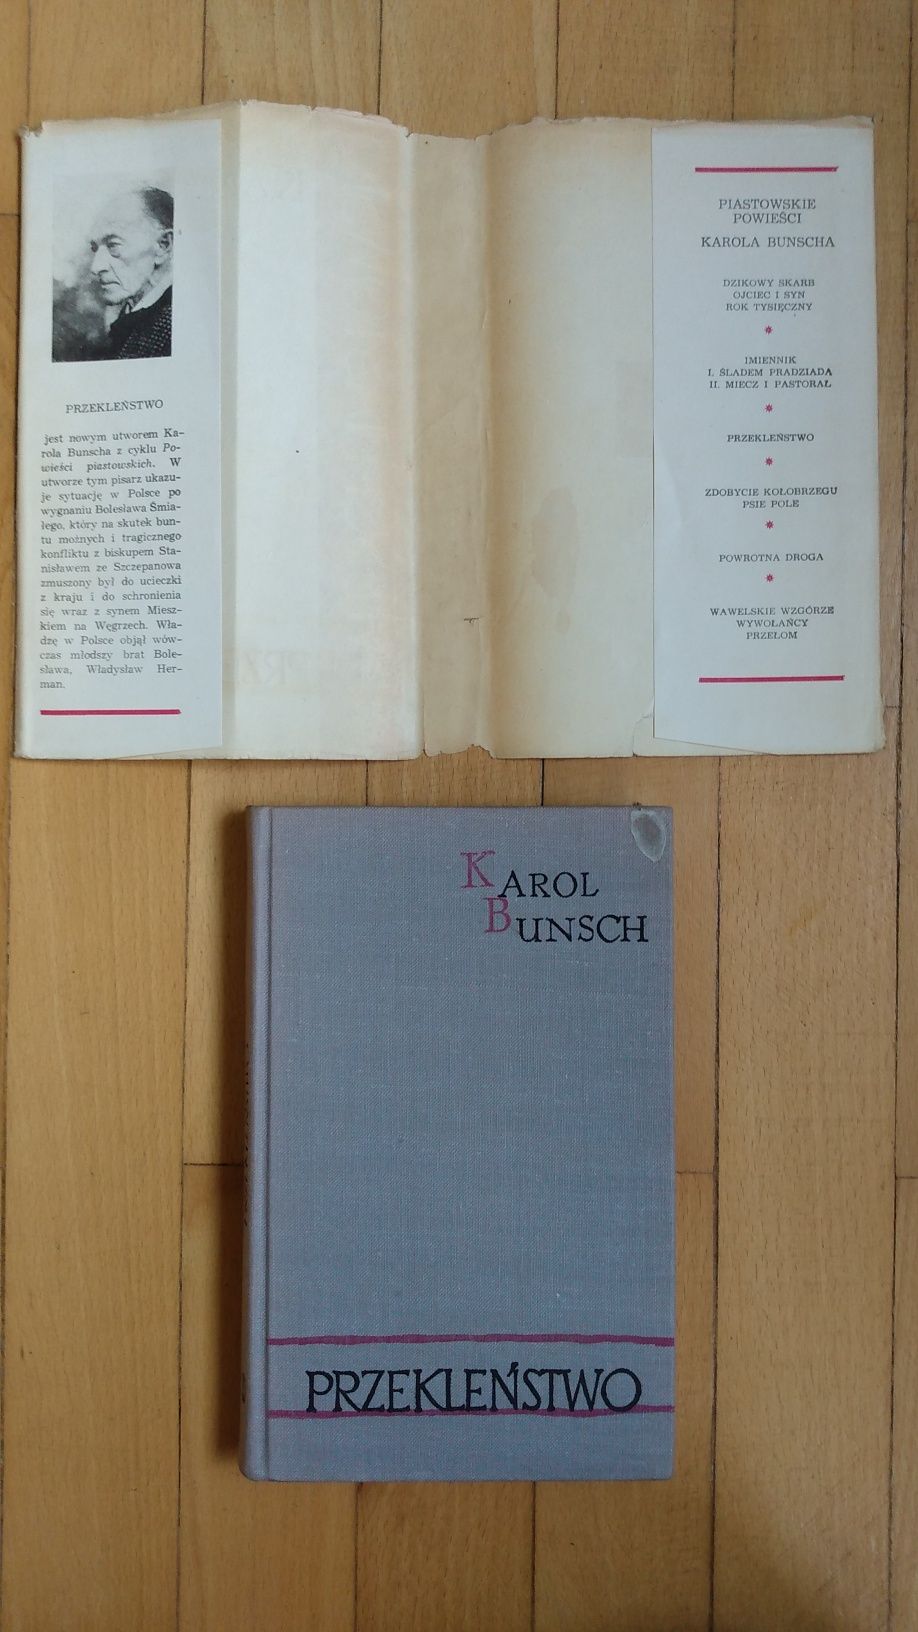 Karol Bunsch Przekleństwo Wydawnictwo Literackie 1973 wyd.l